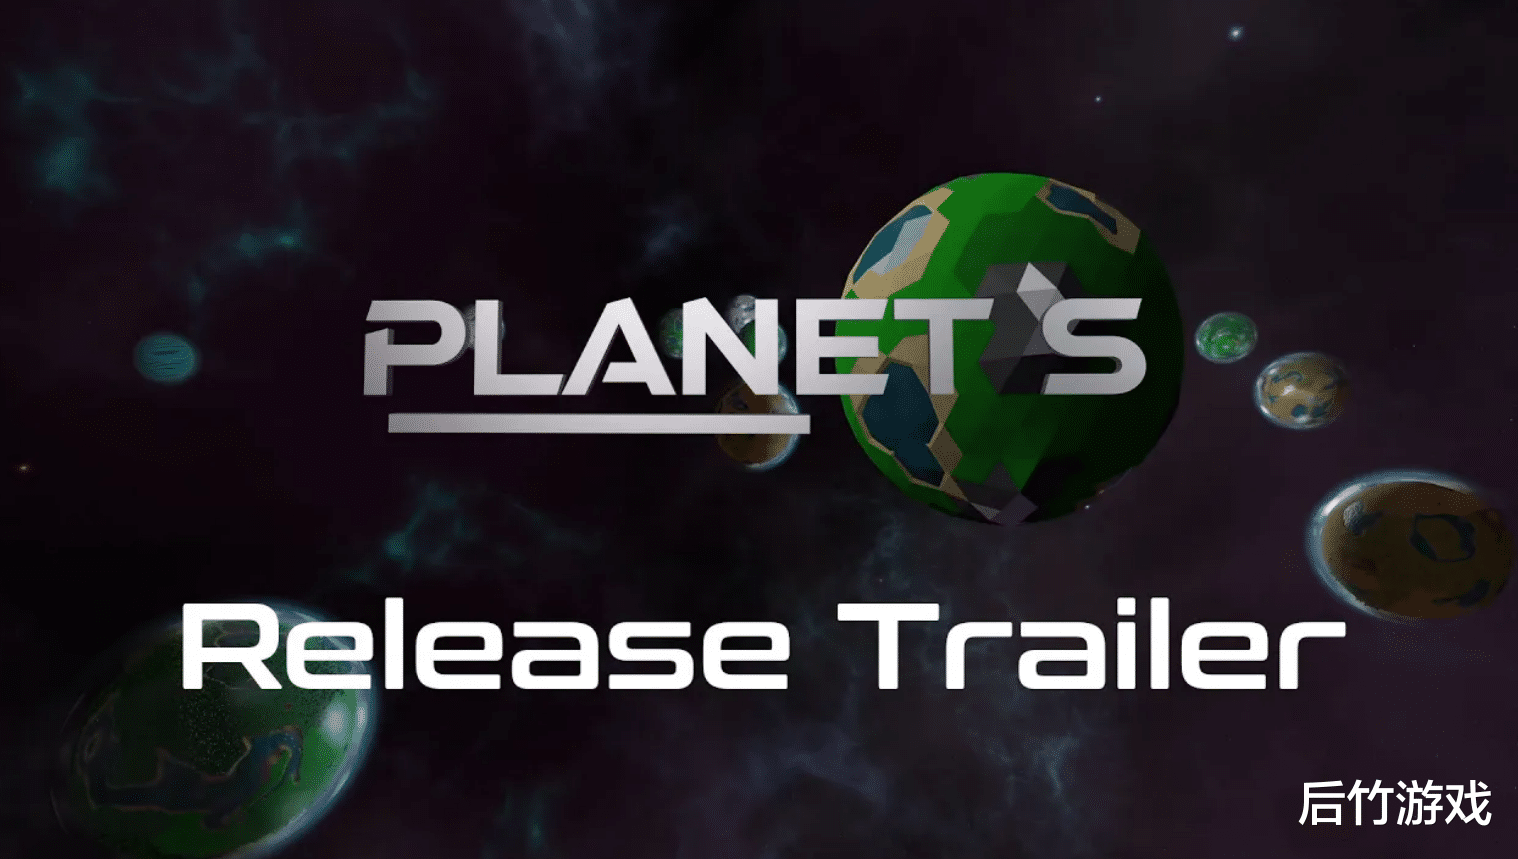 星际扩张类即时策略游戏《Planet S》在Steam上免费发布